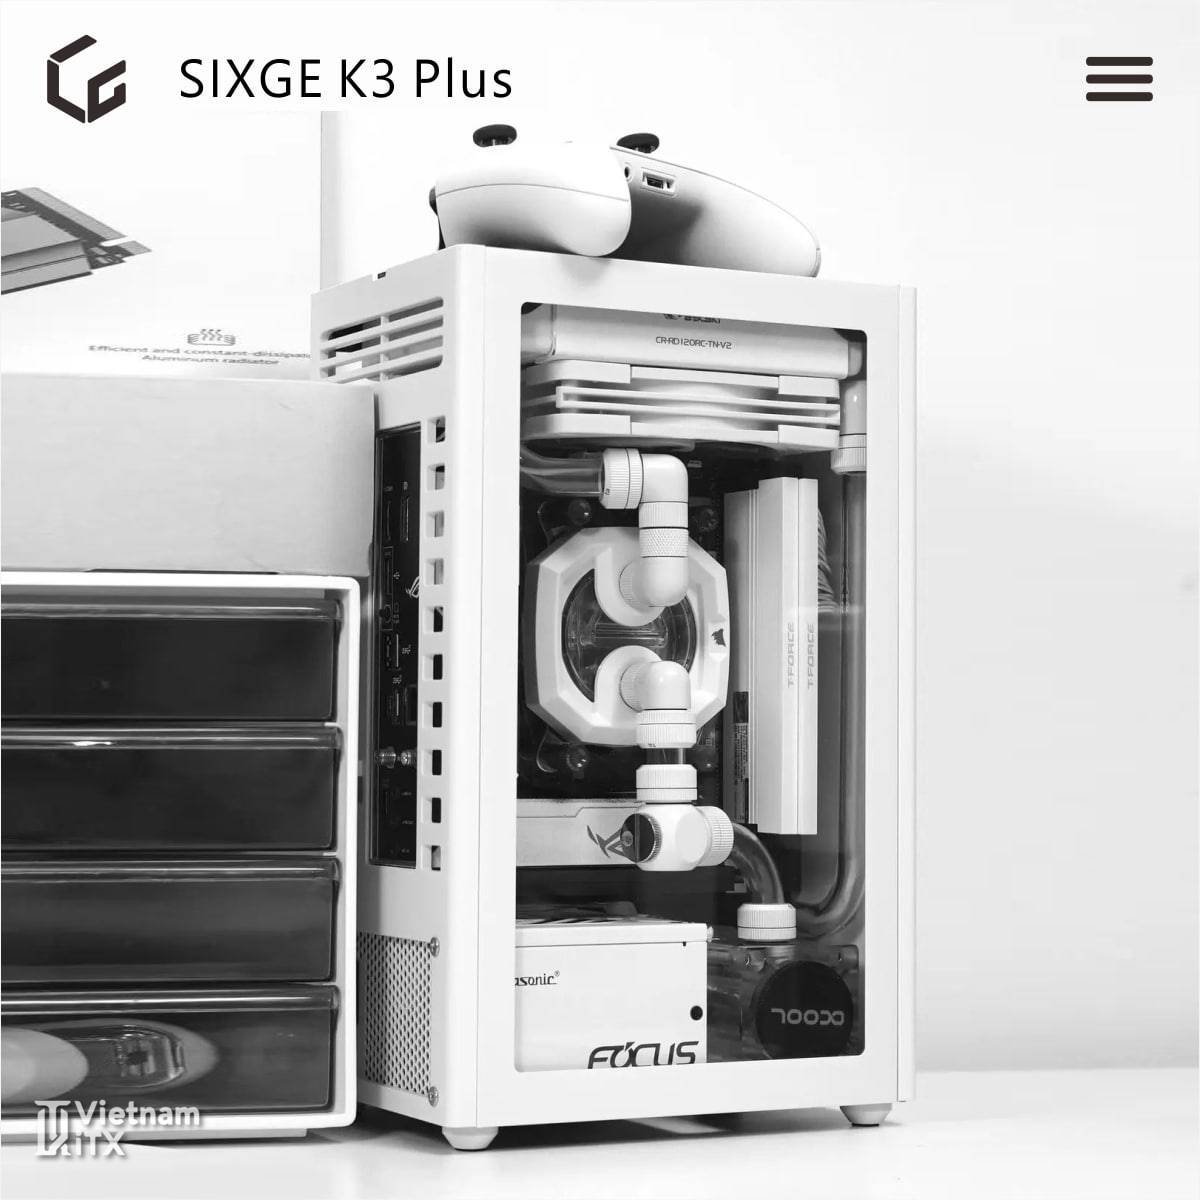 Sixge K3 Plus phiên bản nâng cấp v3.0 tới từ dòng vỏ máy itx K3S (2).jpg